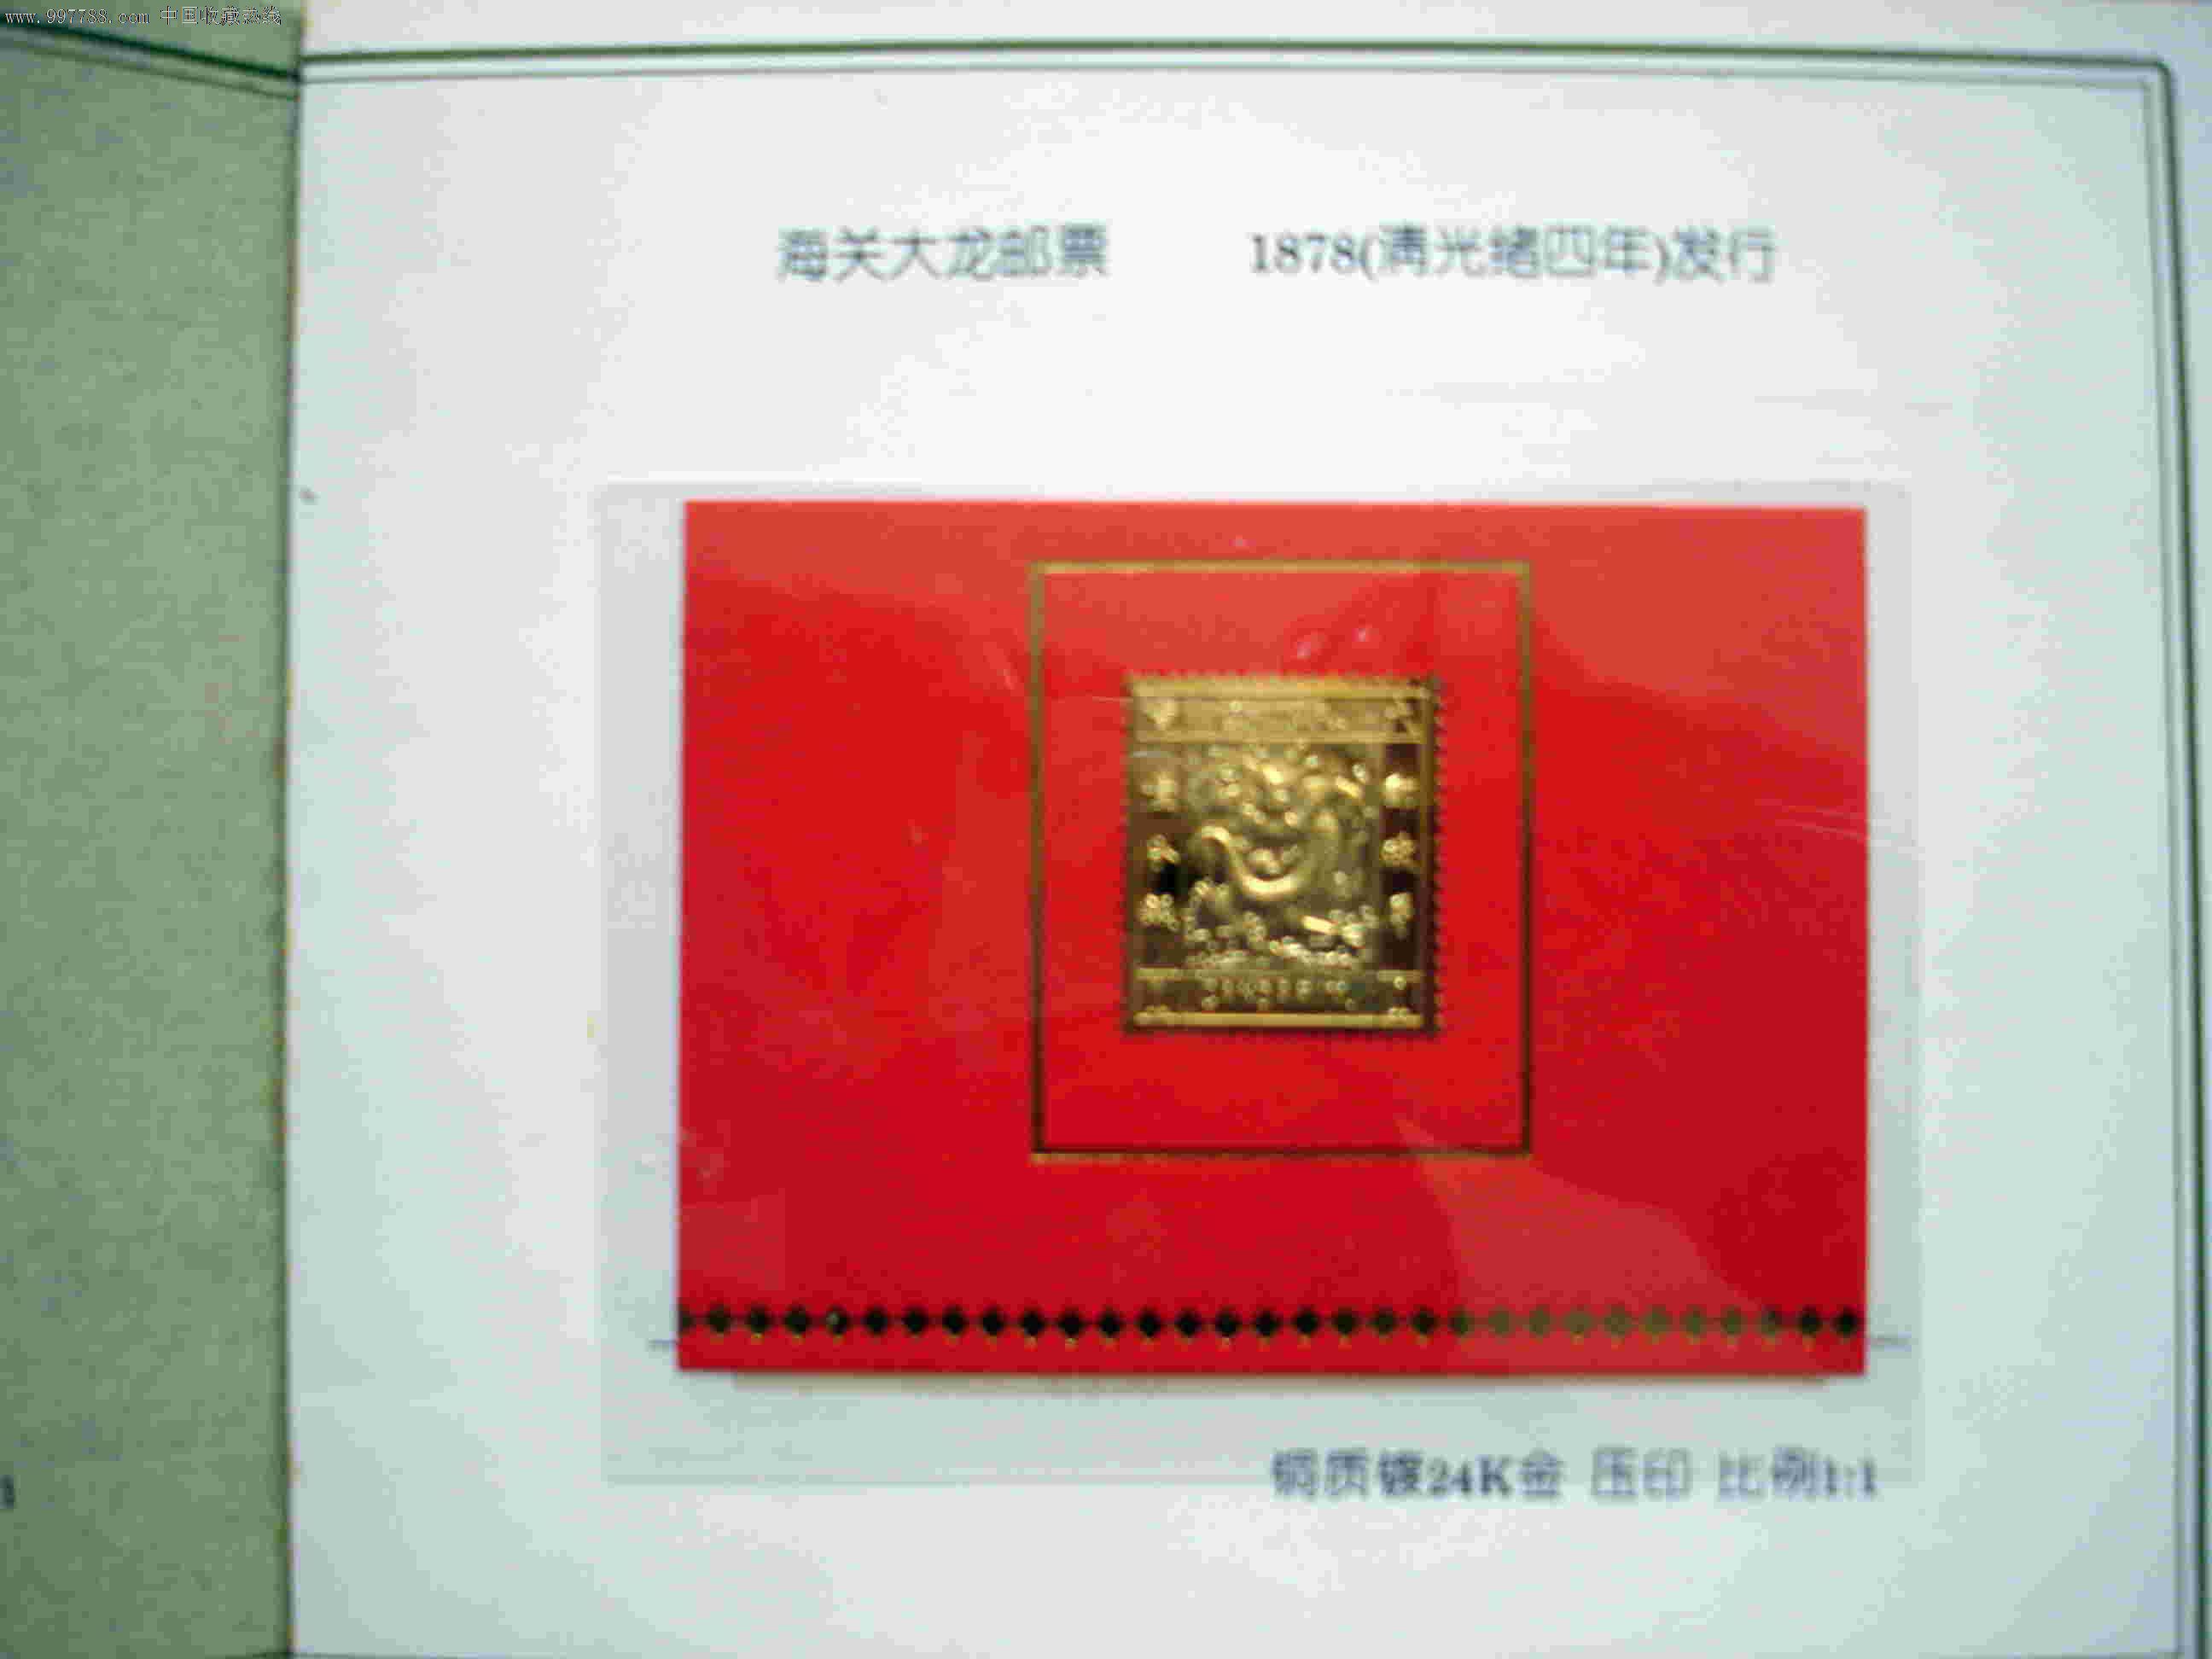 中国珍品邮票系列纪念册,海关大龙邮票铜质镀